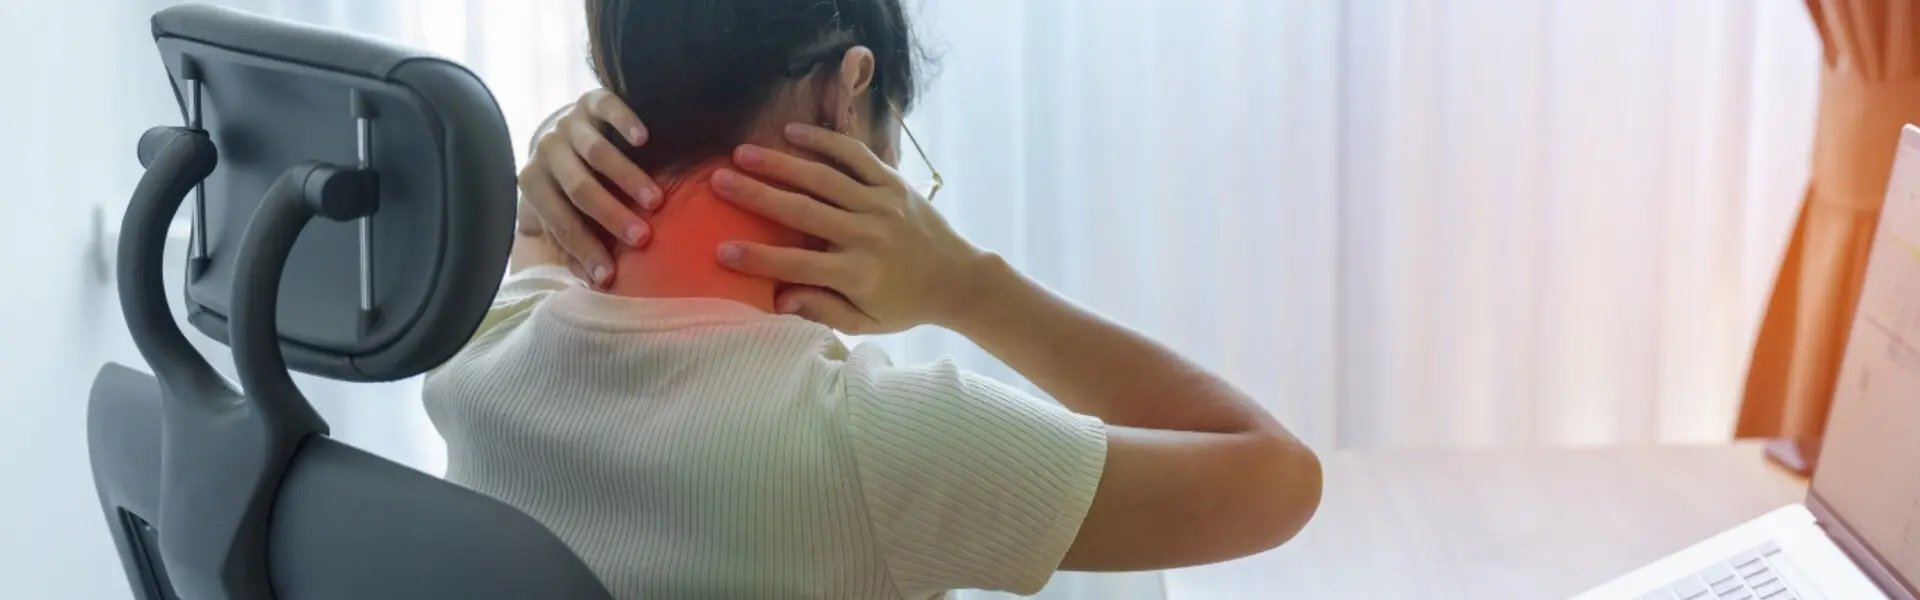 Mujer con dolor de cuello y espalda debido a fibromialgia trabajando en computadora.